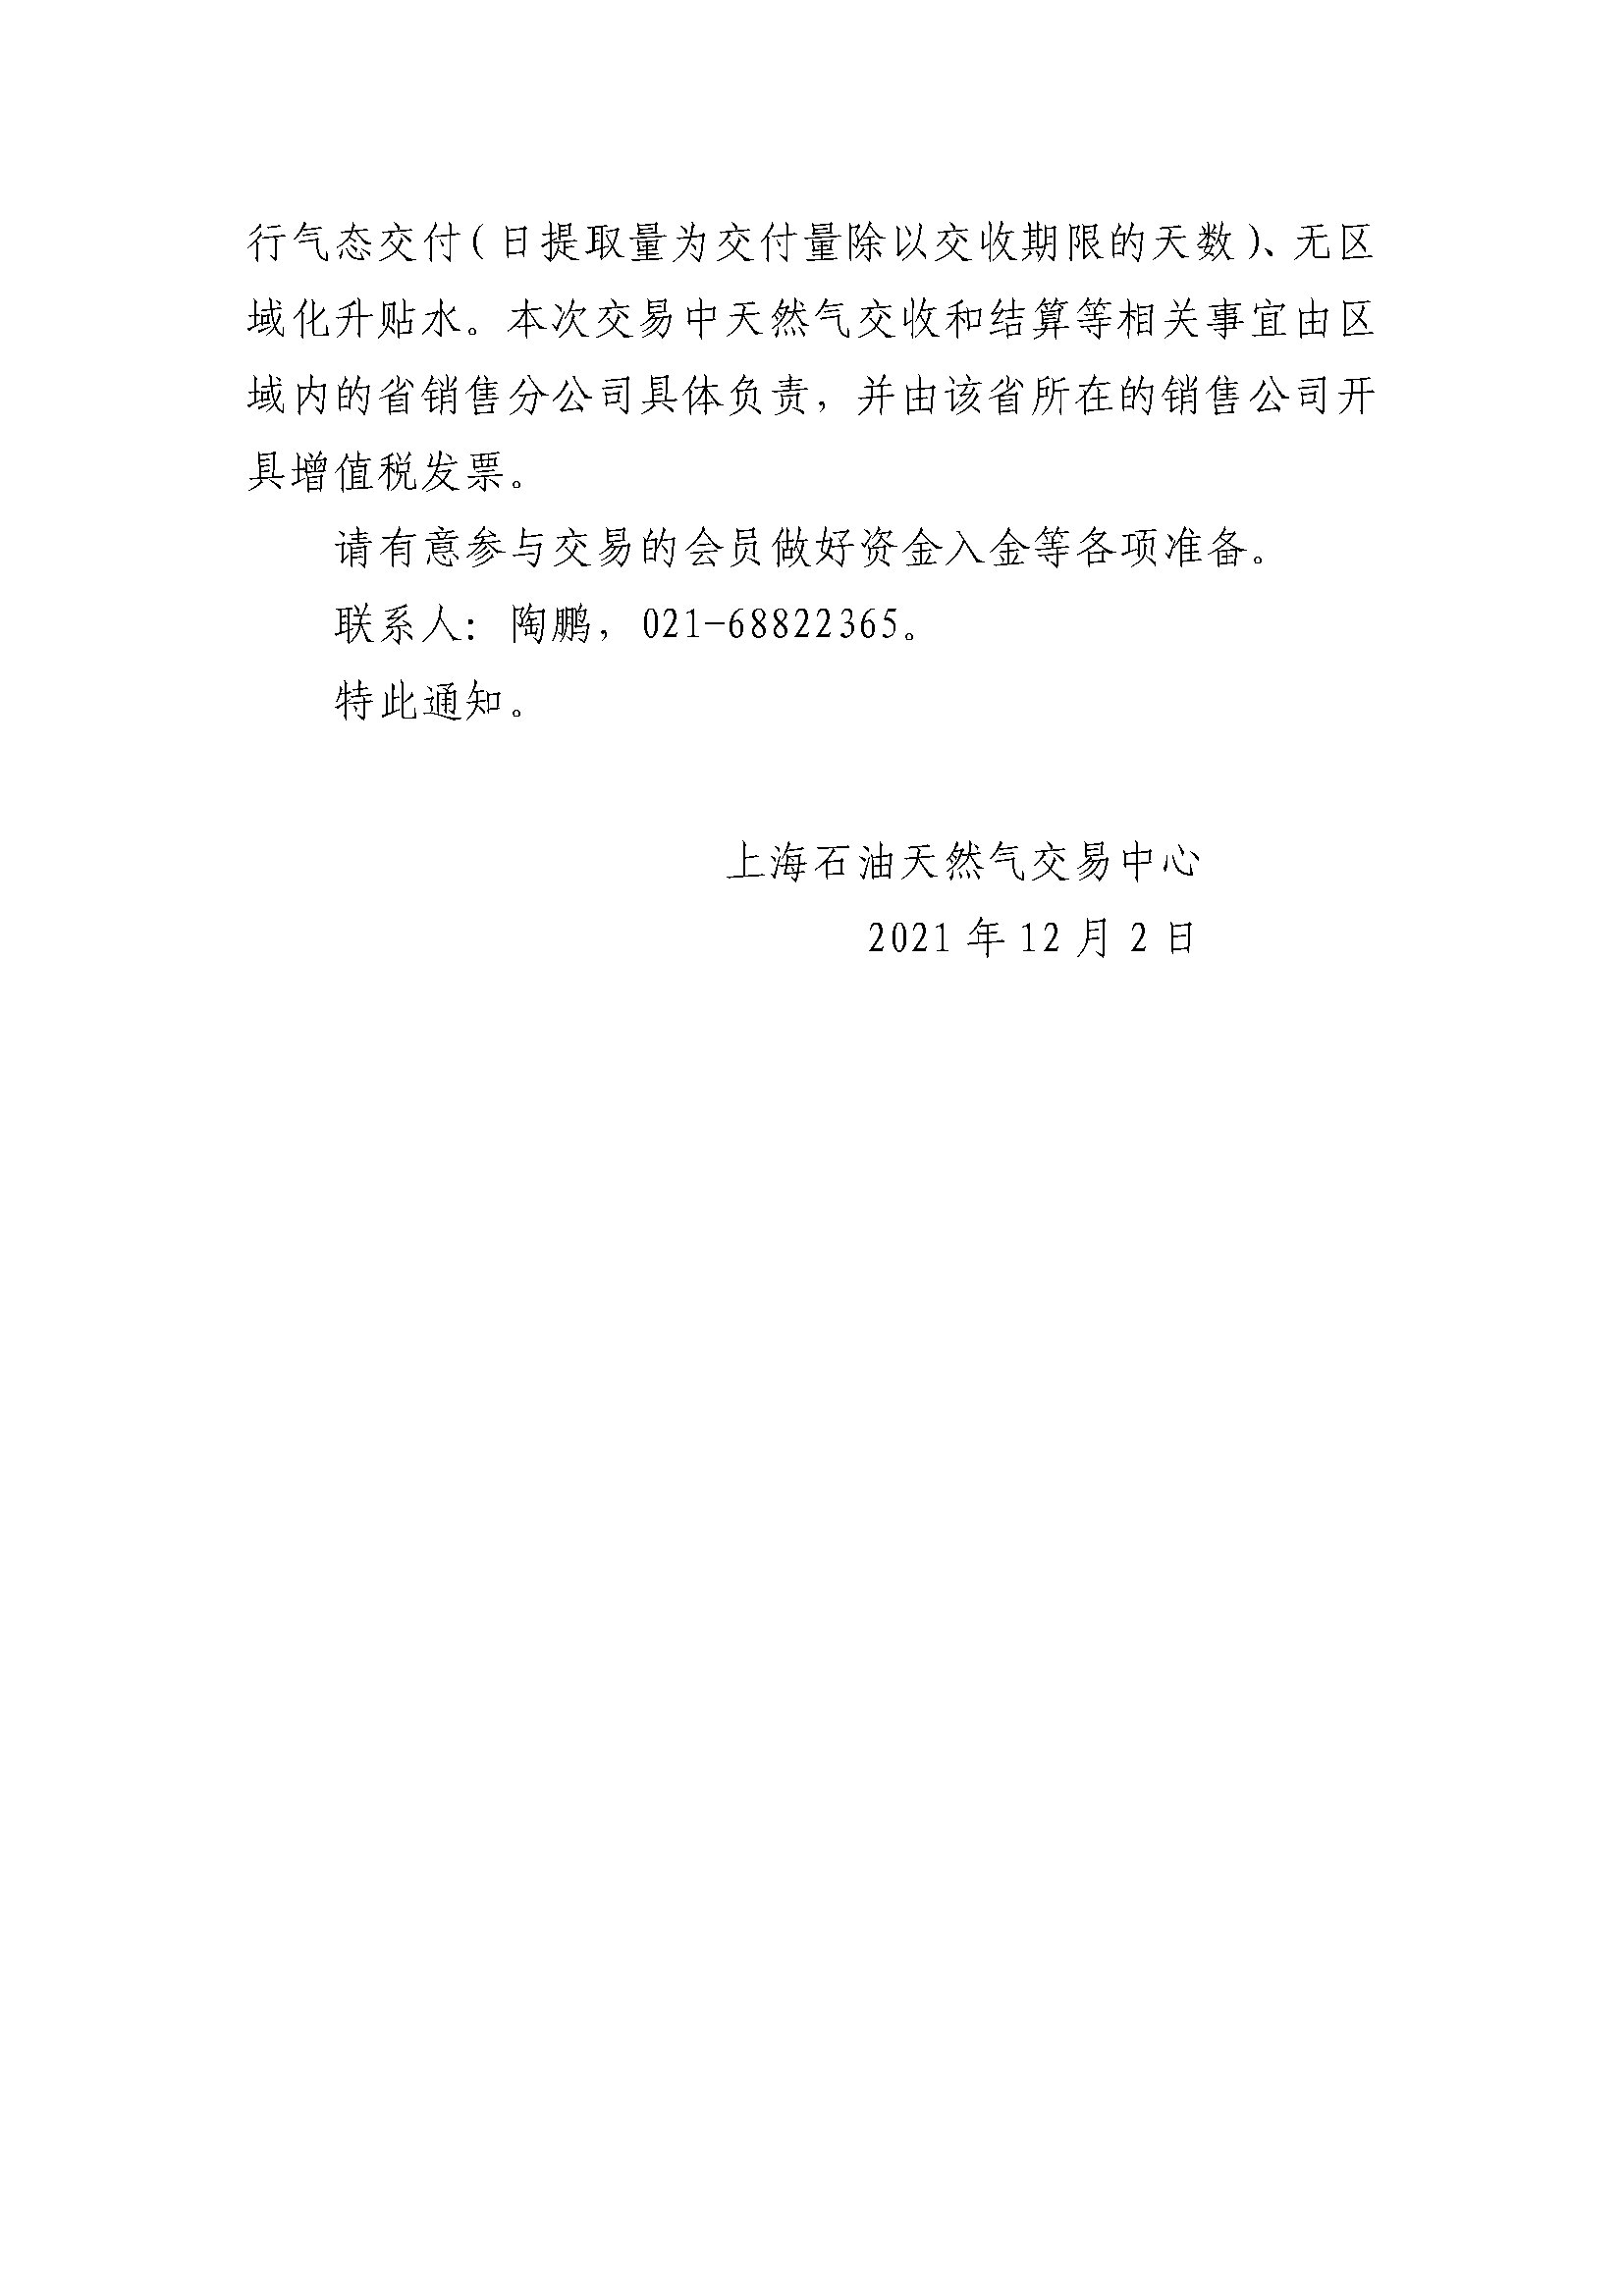 关于中国石油天然气销售东部公司开展天然气竞价交易的通知（有编号）_页面_2.png